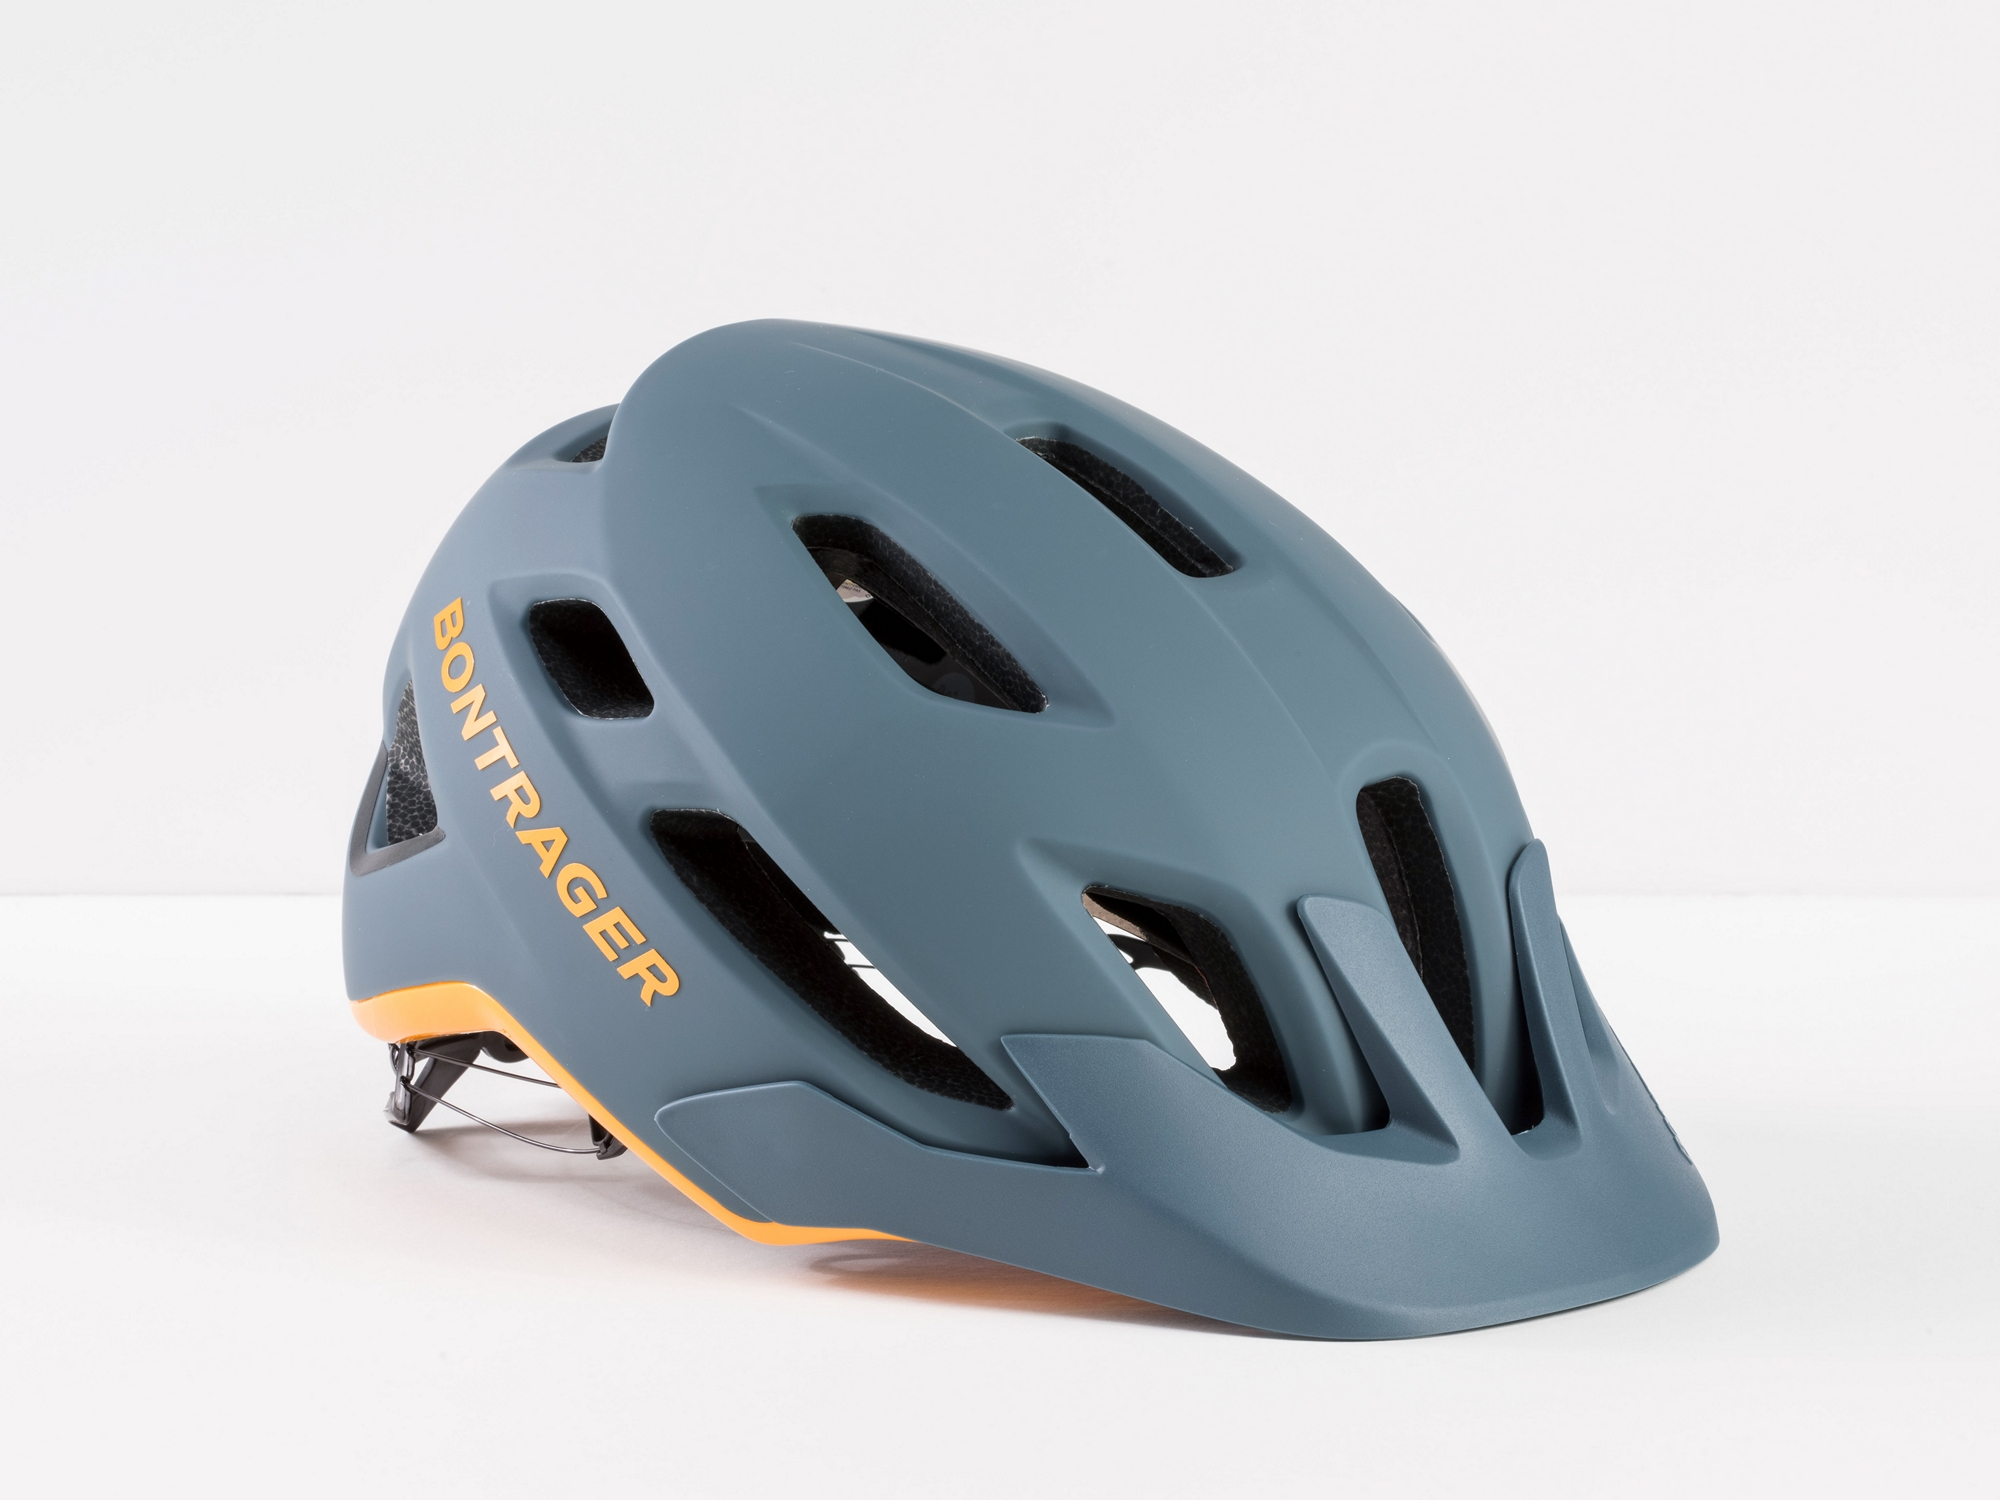 Bontrager bontrager cycle helmet 